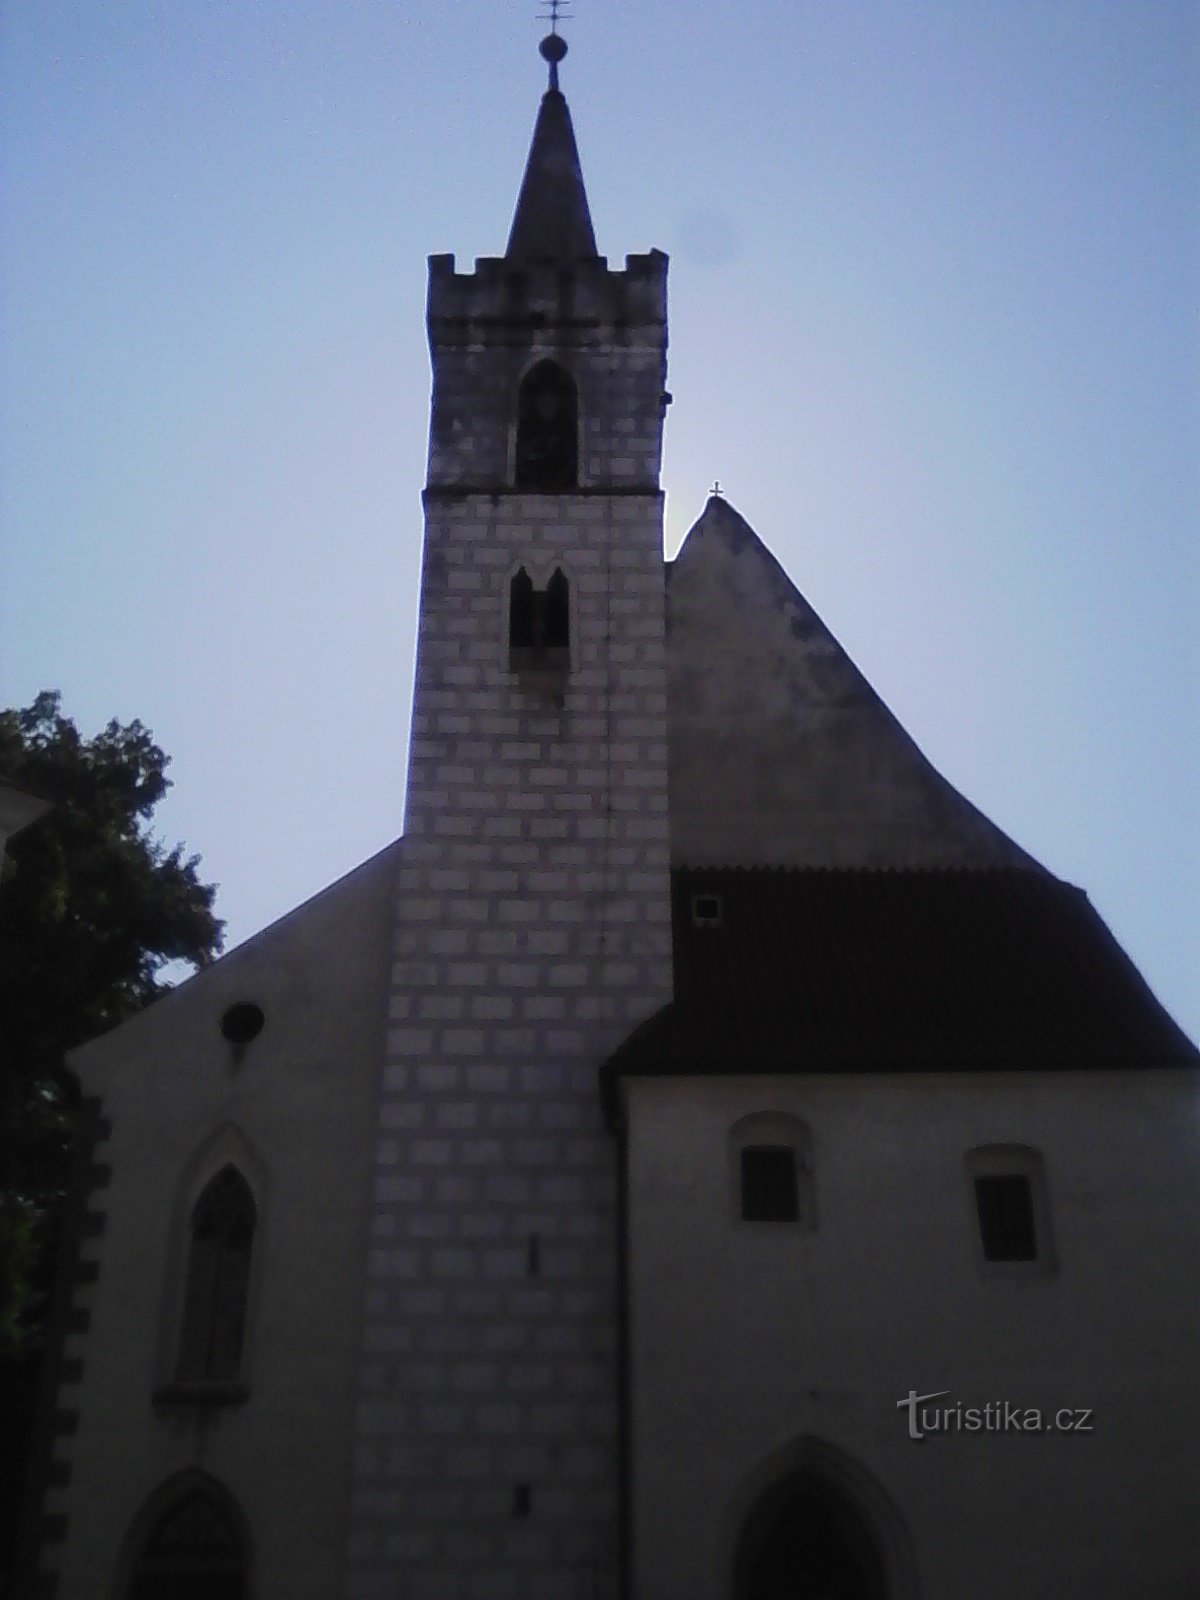 2. Η εκκλησία του Αγίου Μαρτίνου στο Sedlčany είναι χτισμένη σε πρώιμο γοτθικό στυλ. Ουσούζου